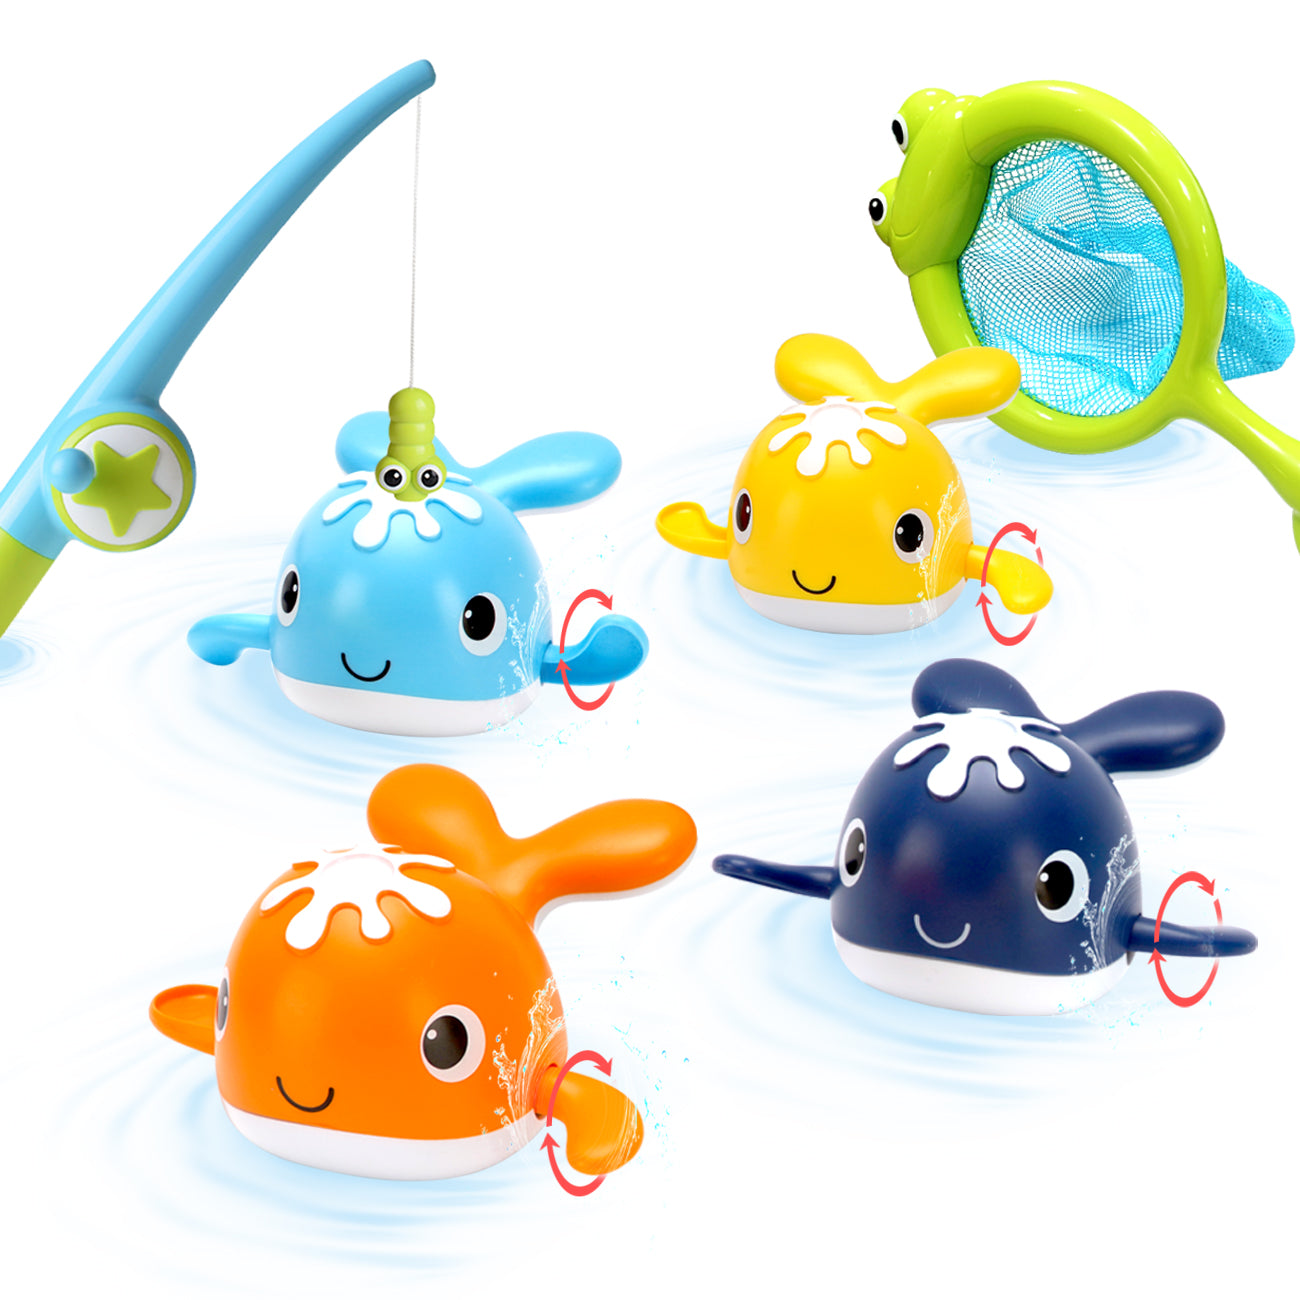 Children's Ducks Fishing, Magnetic Ducks Toy, Water Fishing Game